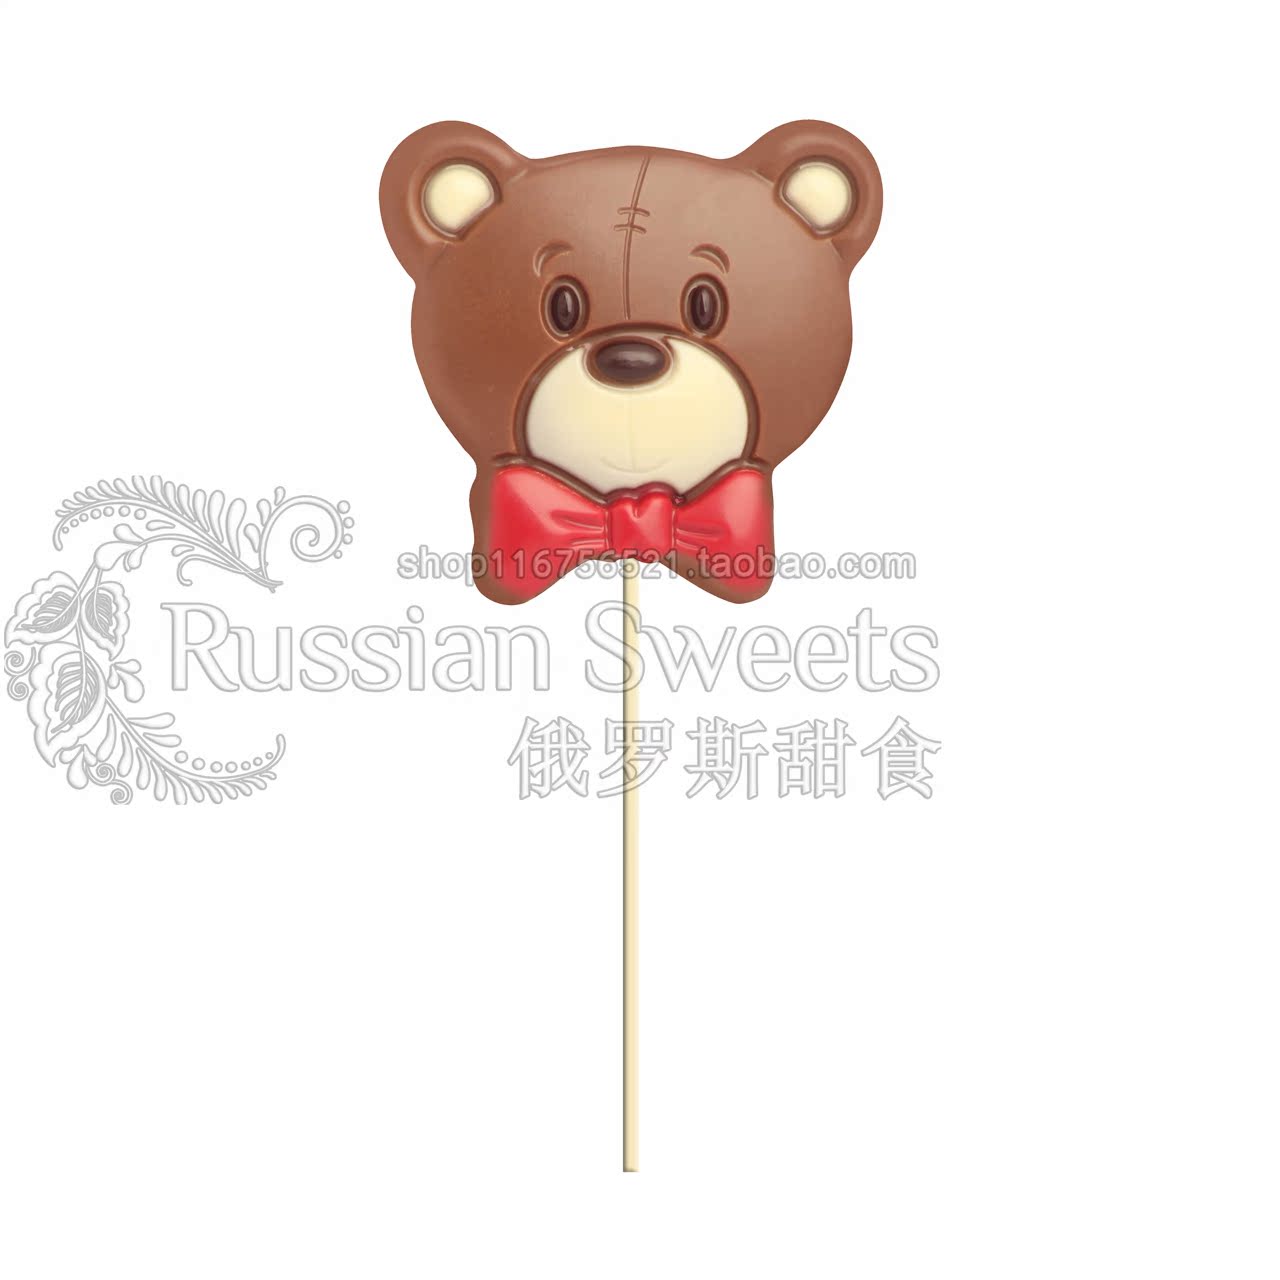 满98包邮1456俄罗斯进口彩虹牛奶巧克力棒棒糖小熊造型24g儿童节